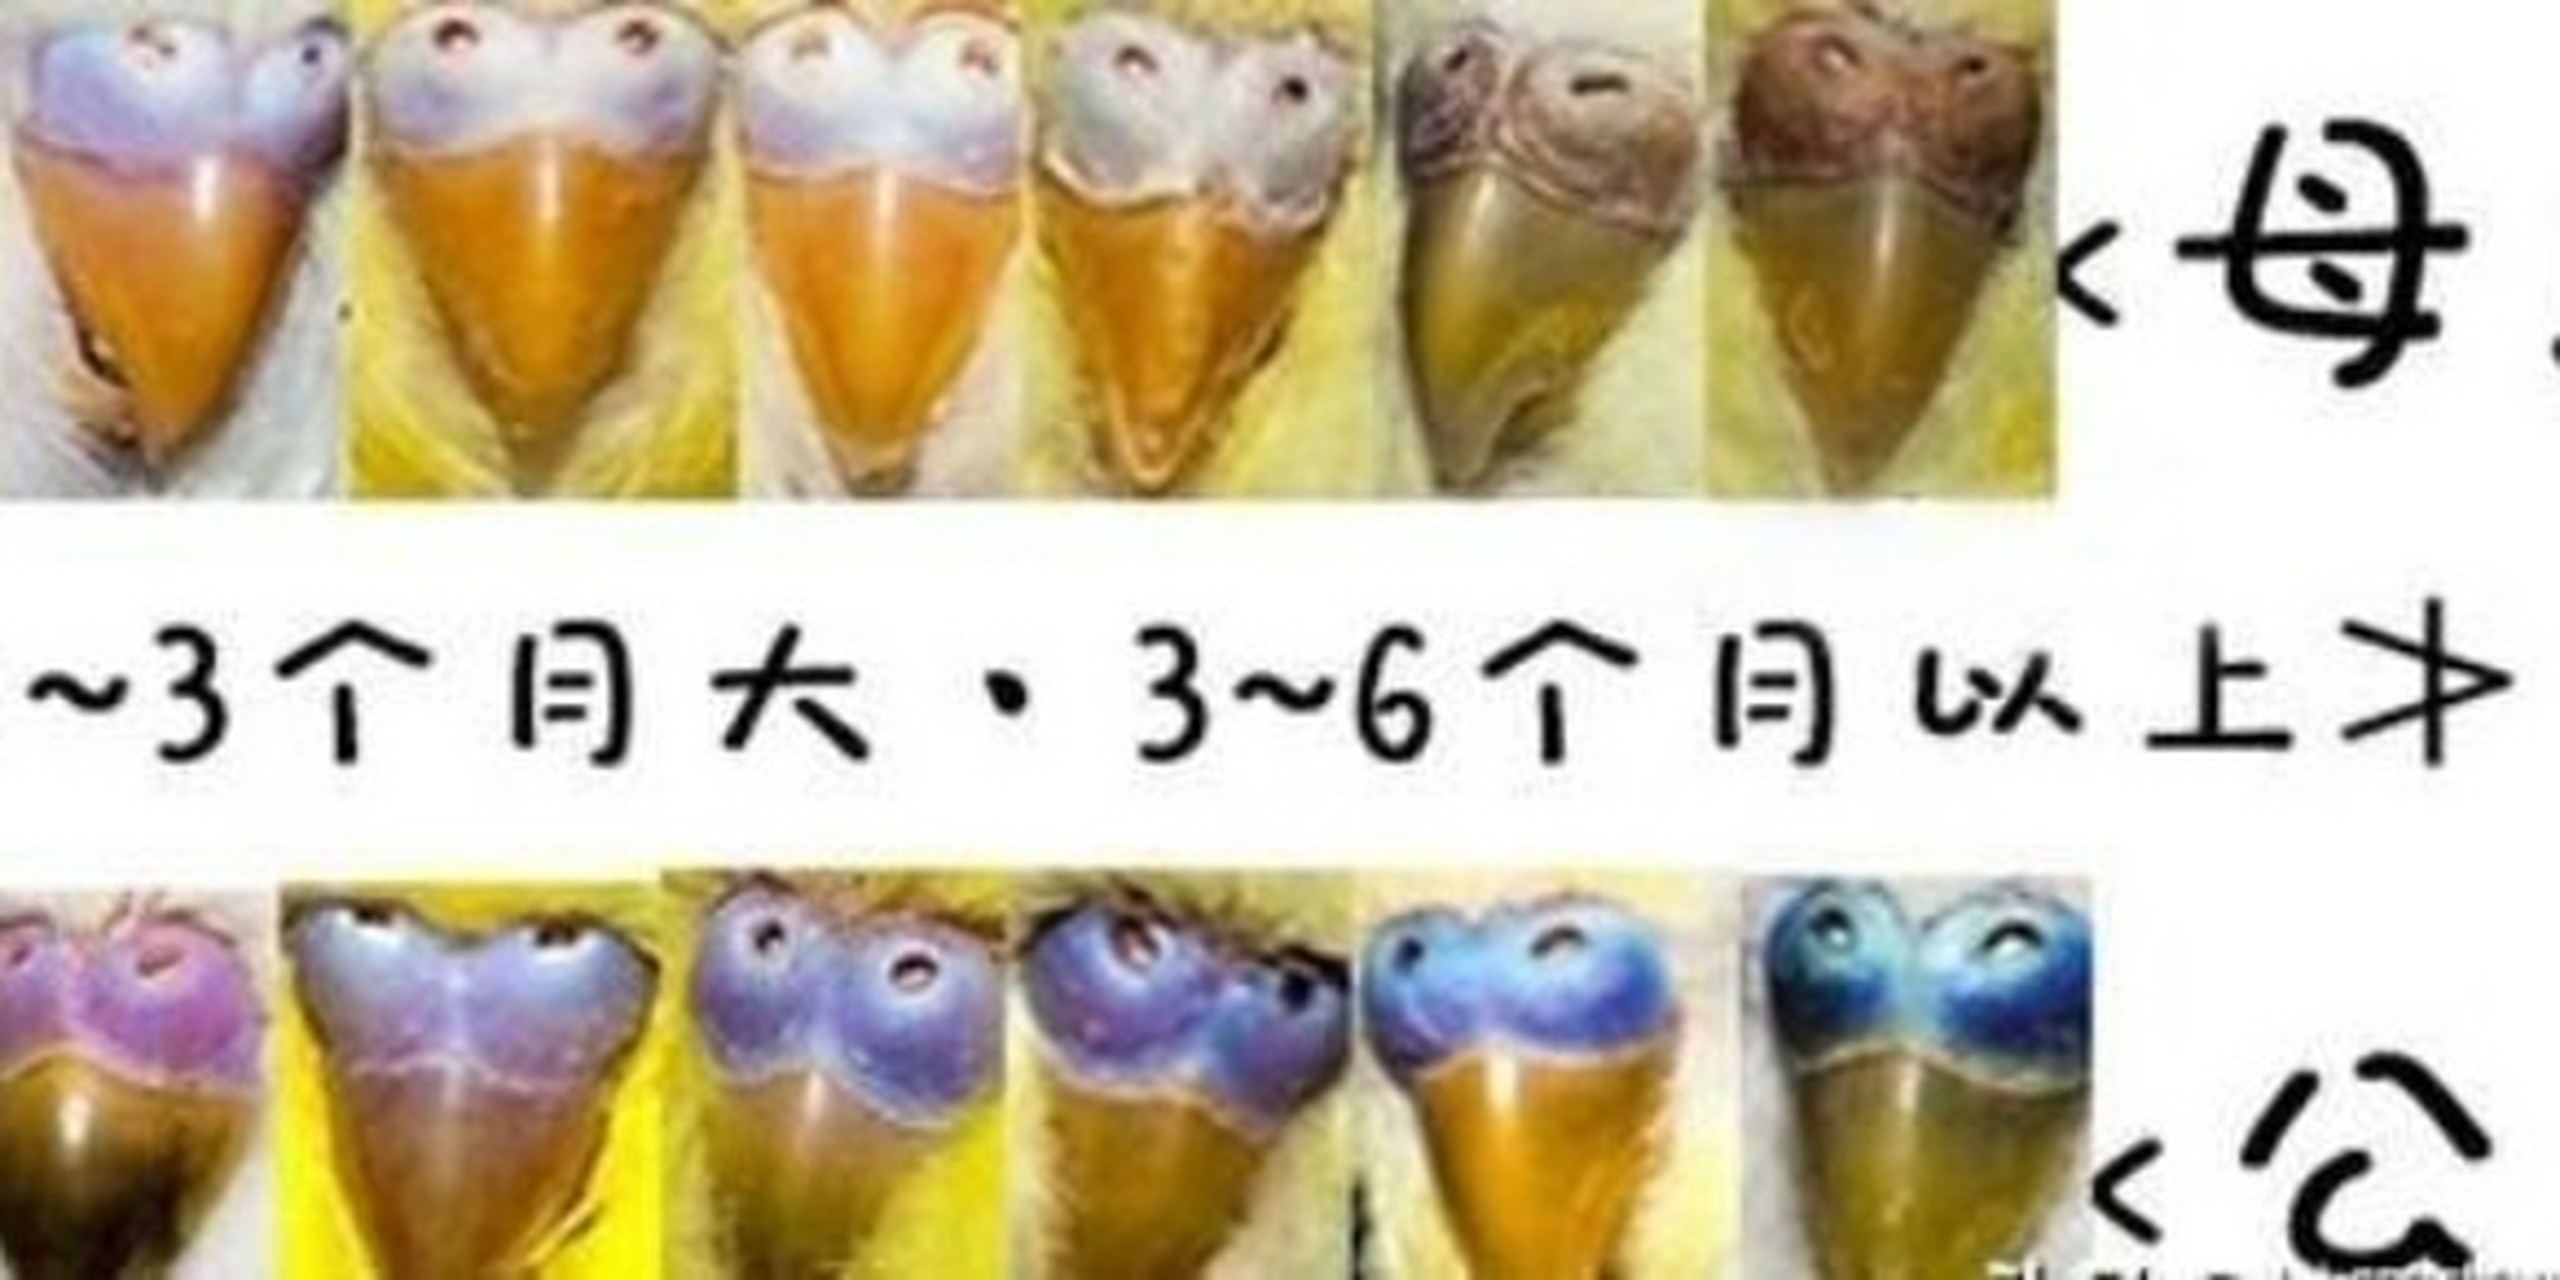 如何区分鹦鹉公母和大小 166辨别大小 幼鸟的虎皮鹦鹉(3个月内):公